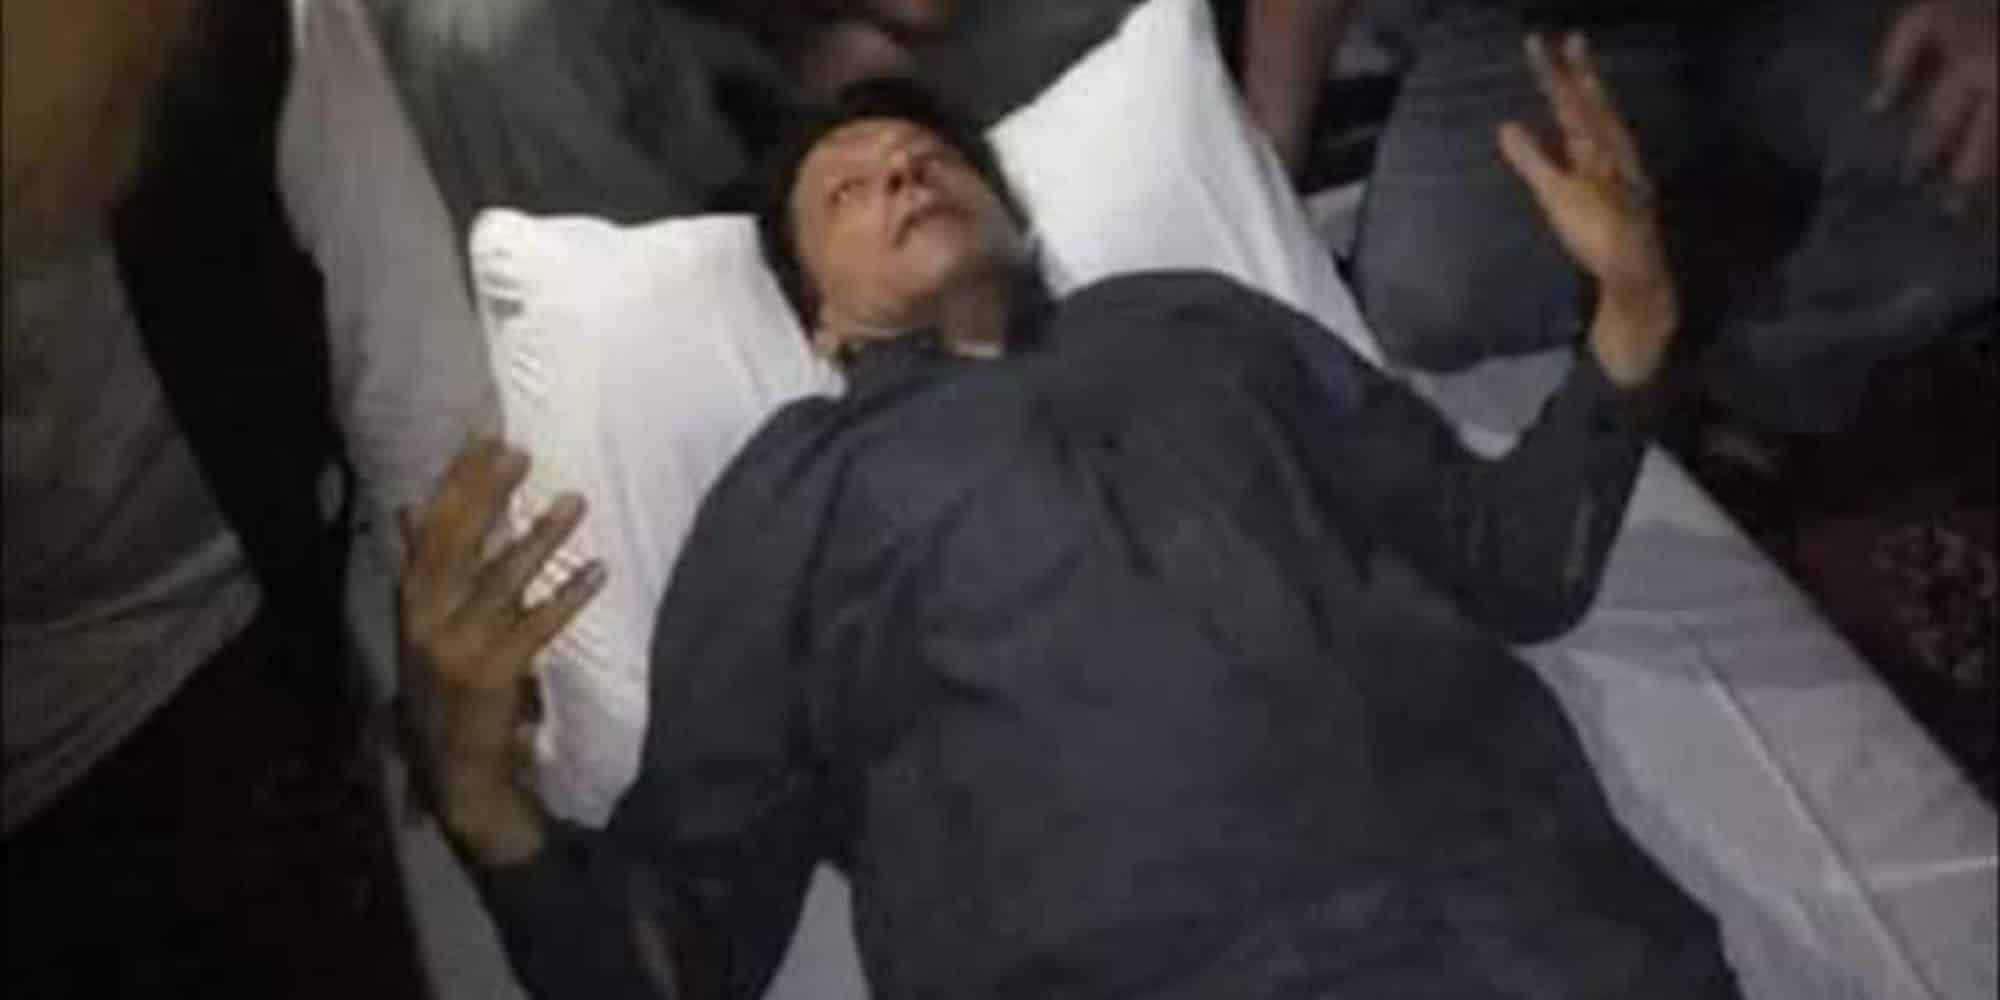 O πρώην πρωθυπουργός του Πακιστάν τραυματισμένος μετά τους πυροβολισμούς